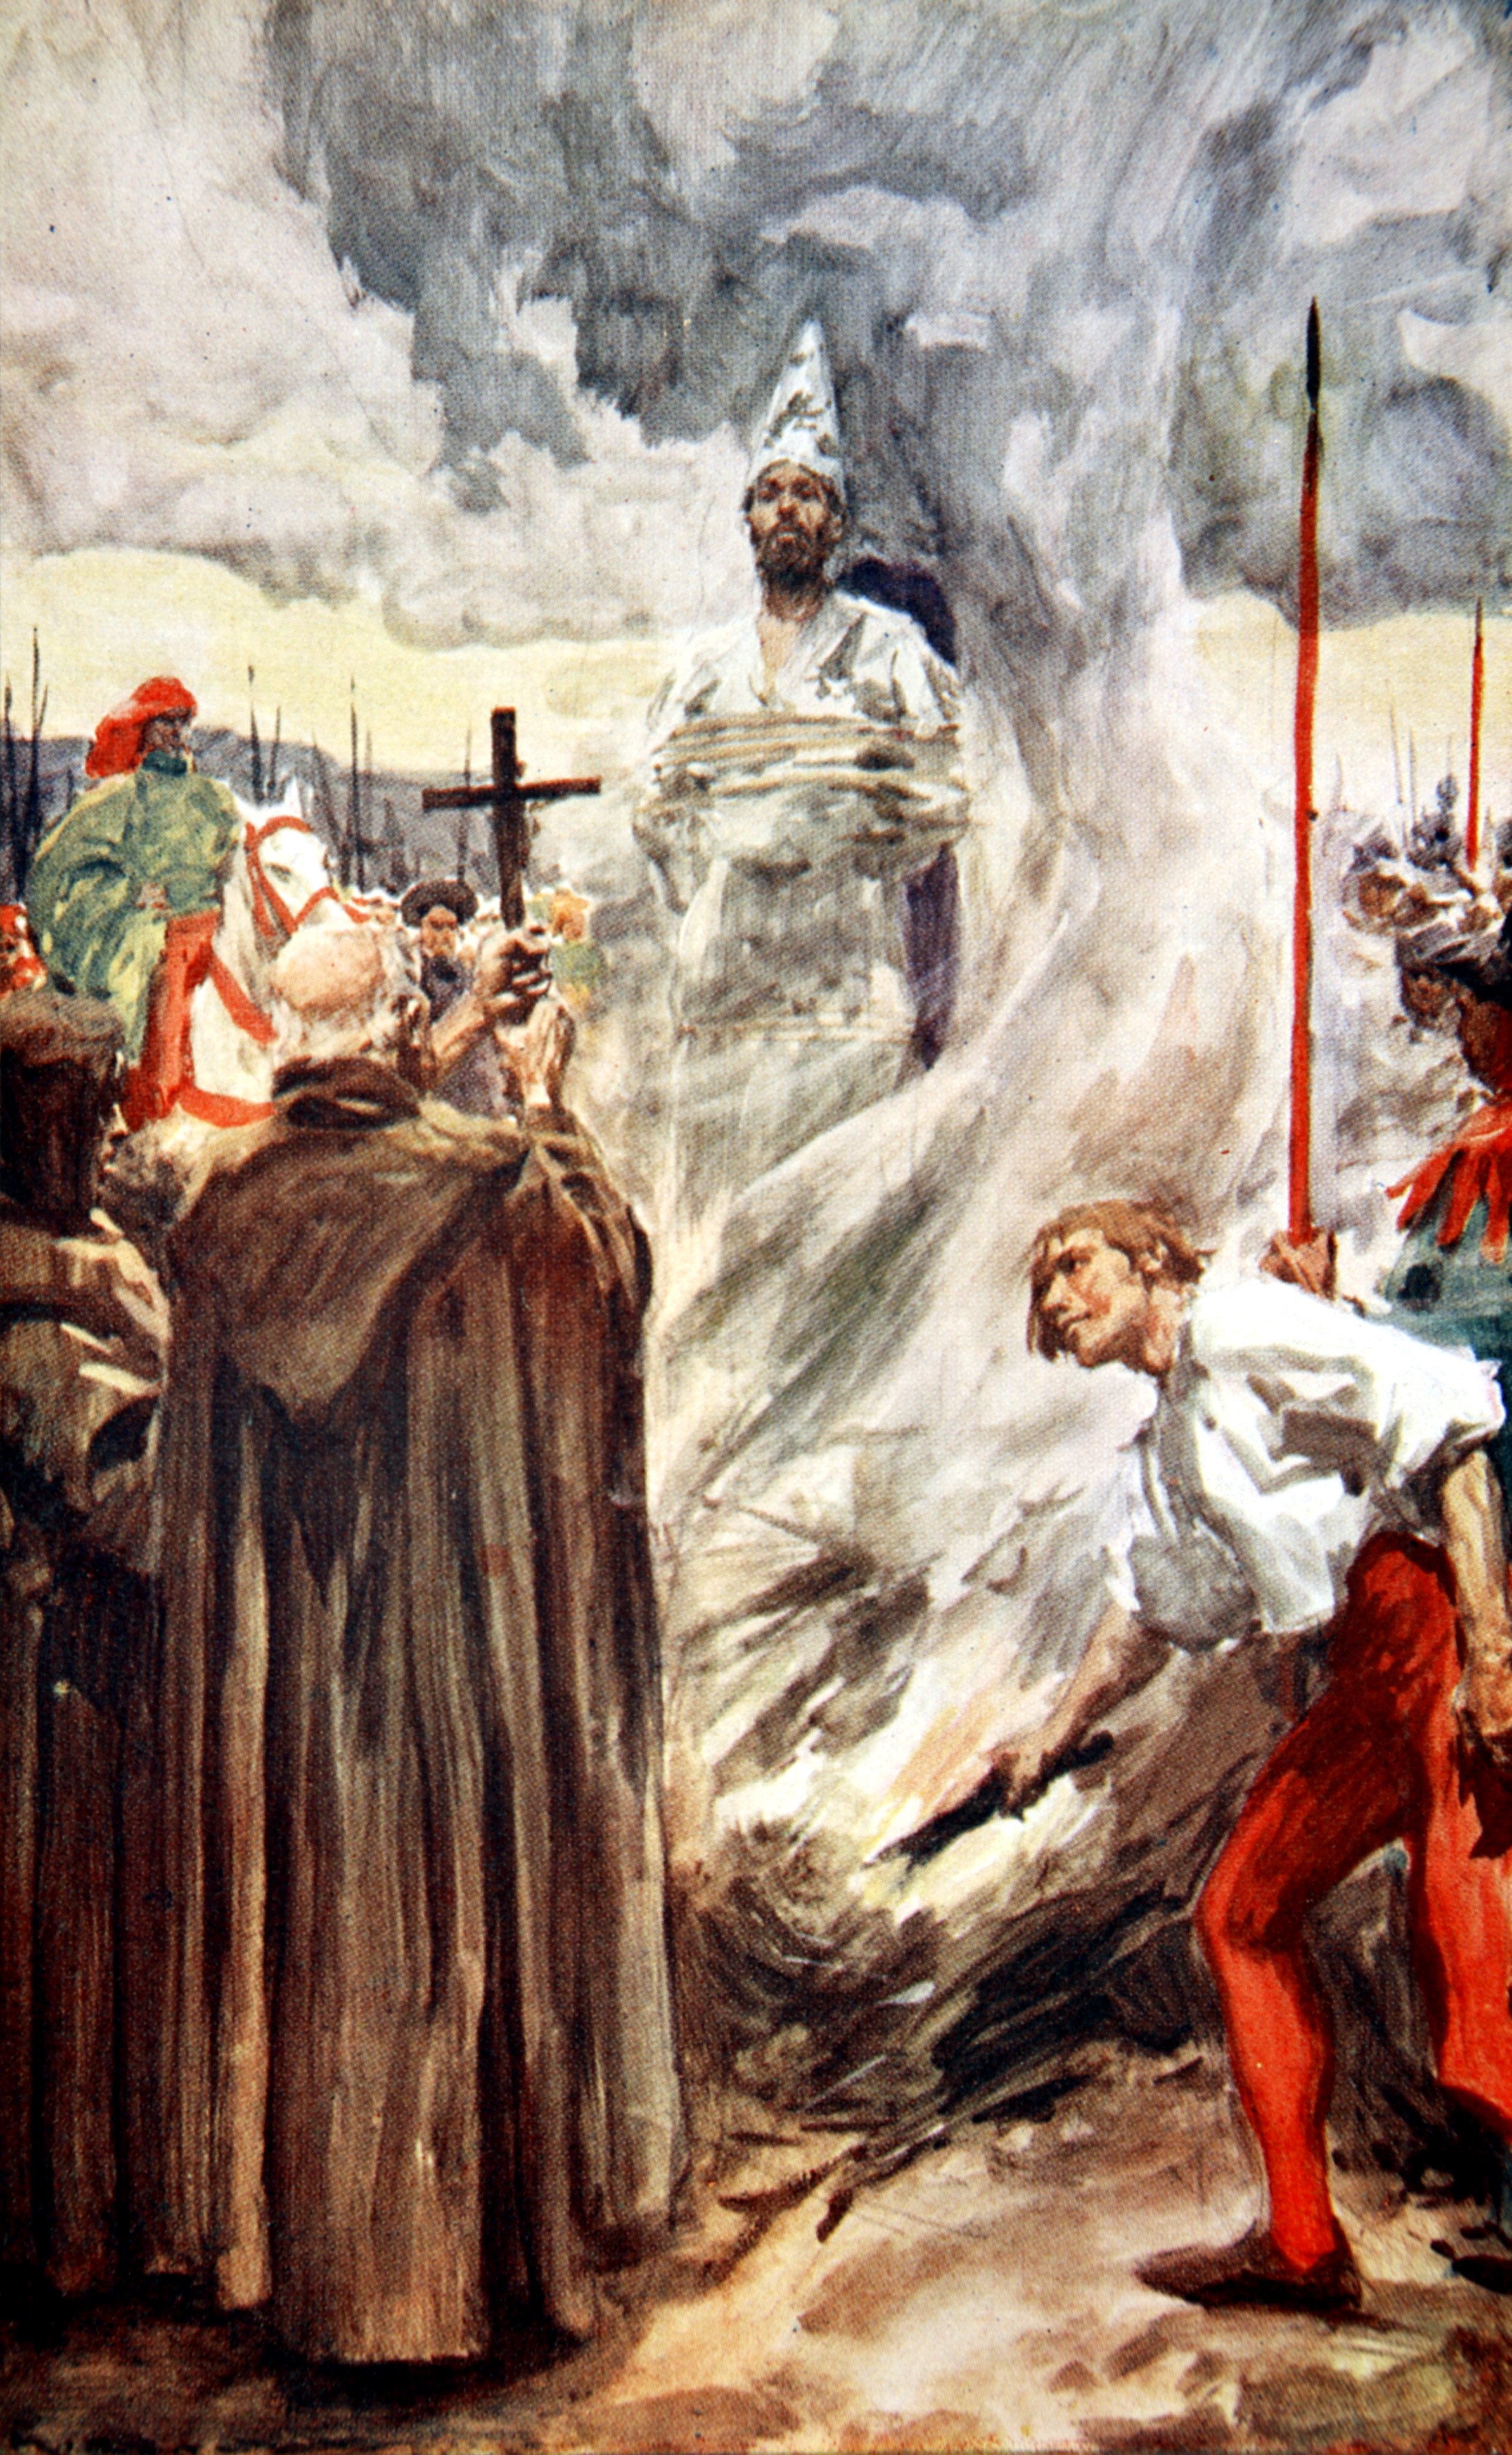 Pintura sobre la ejecución a Jan Hus.